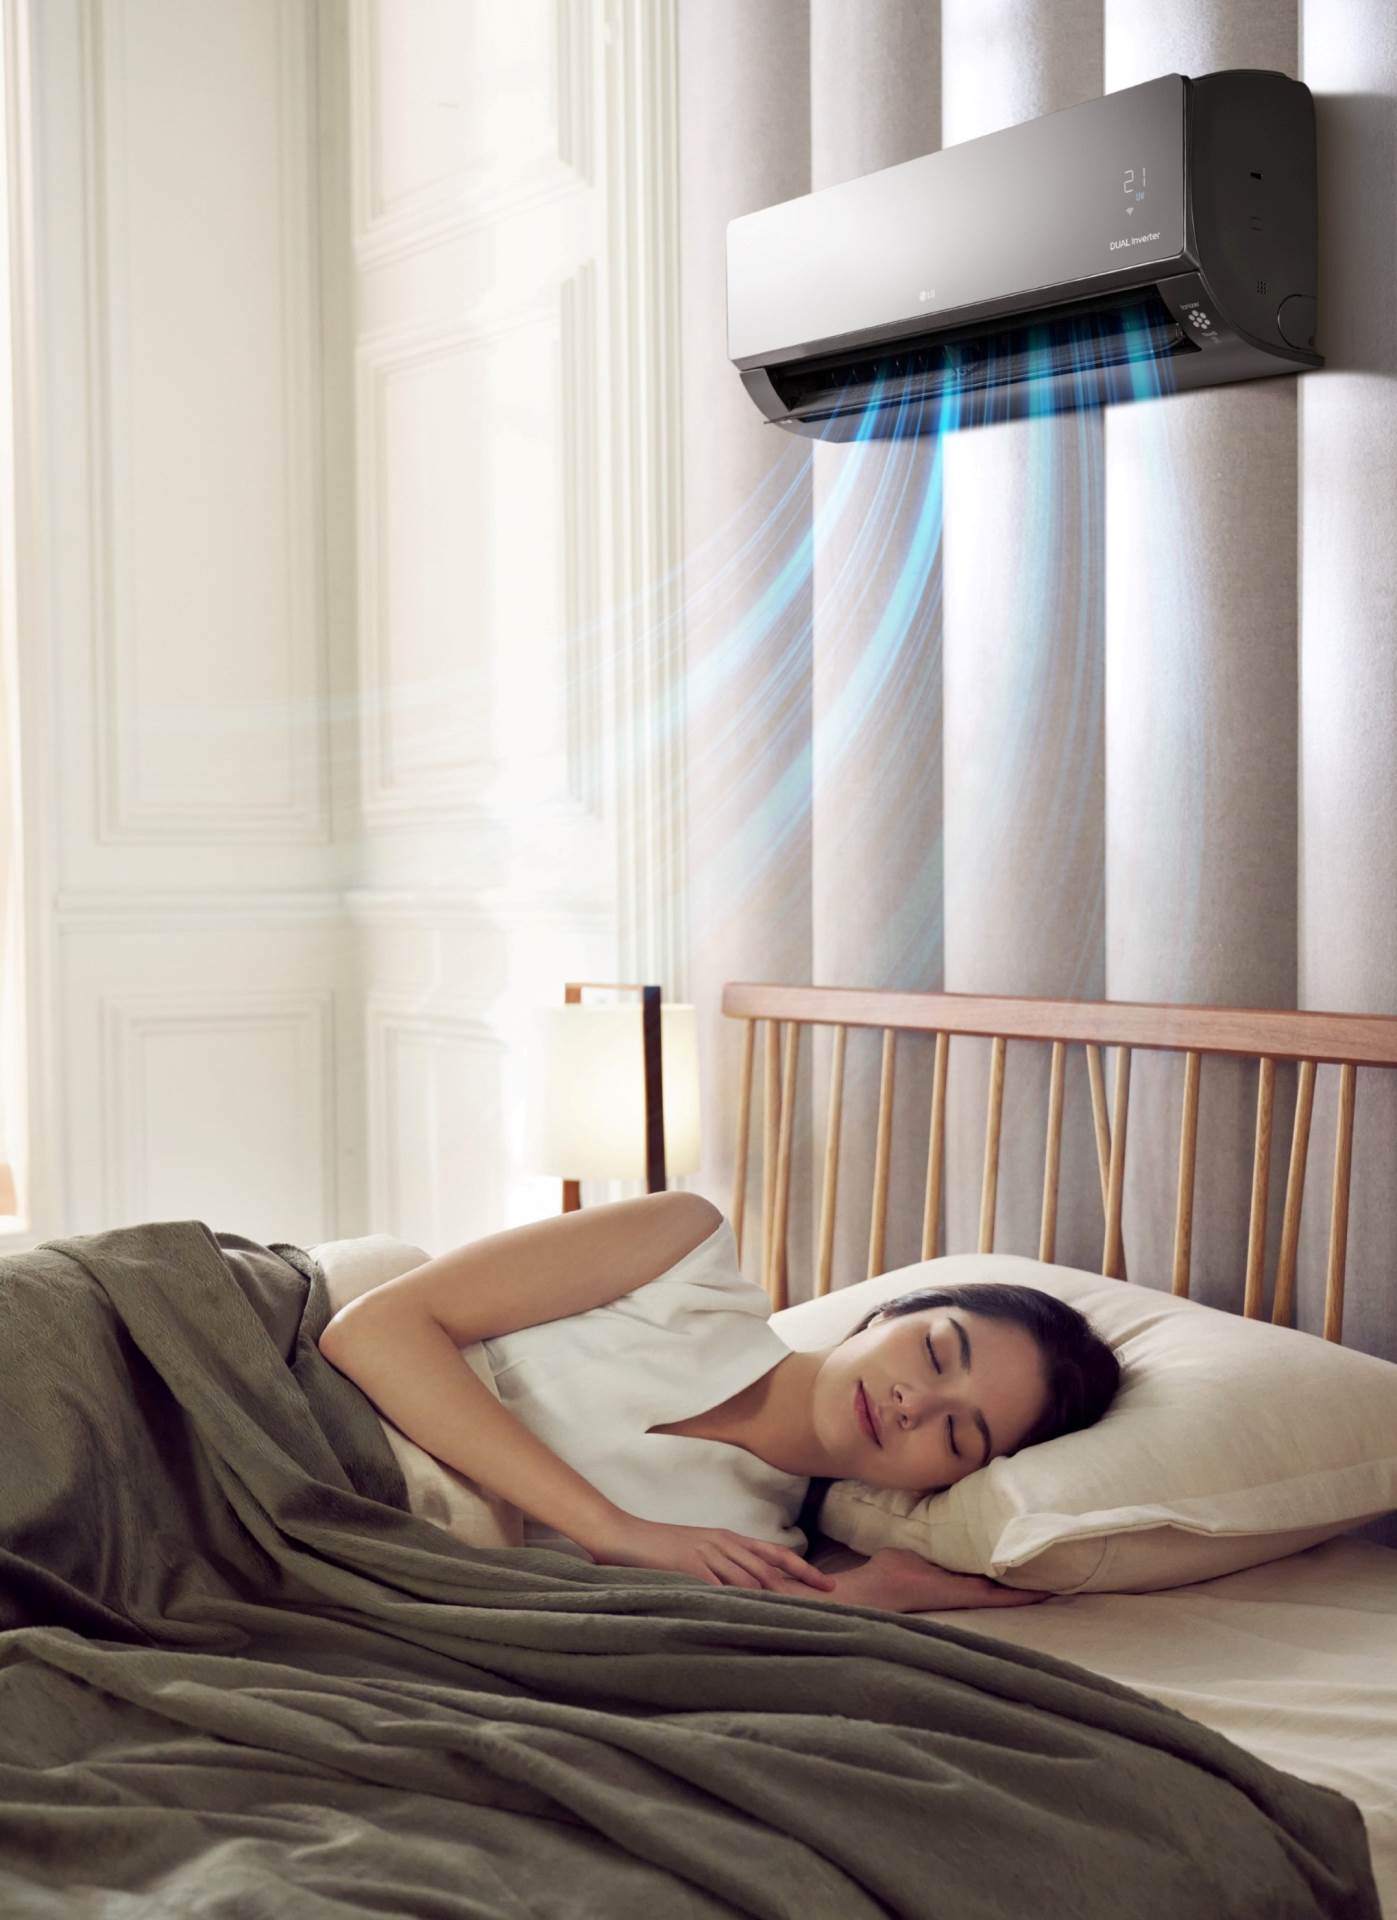 Osim što unose svježinu u dom, LG-evi klima-uređaji brinu i o zdravlju